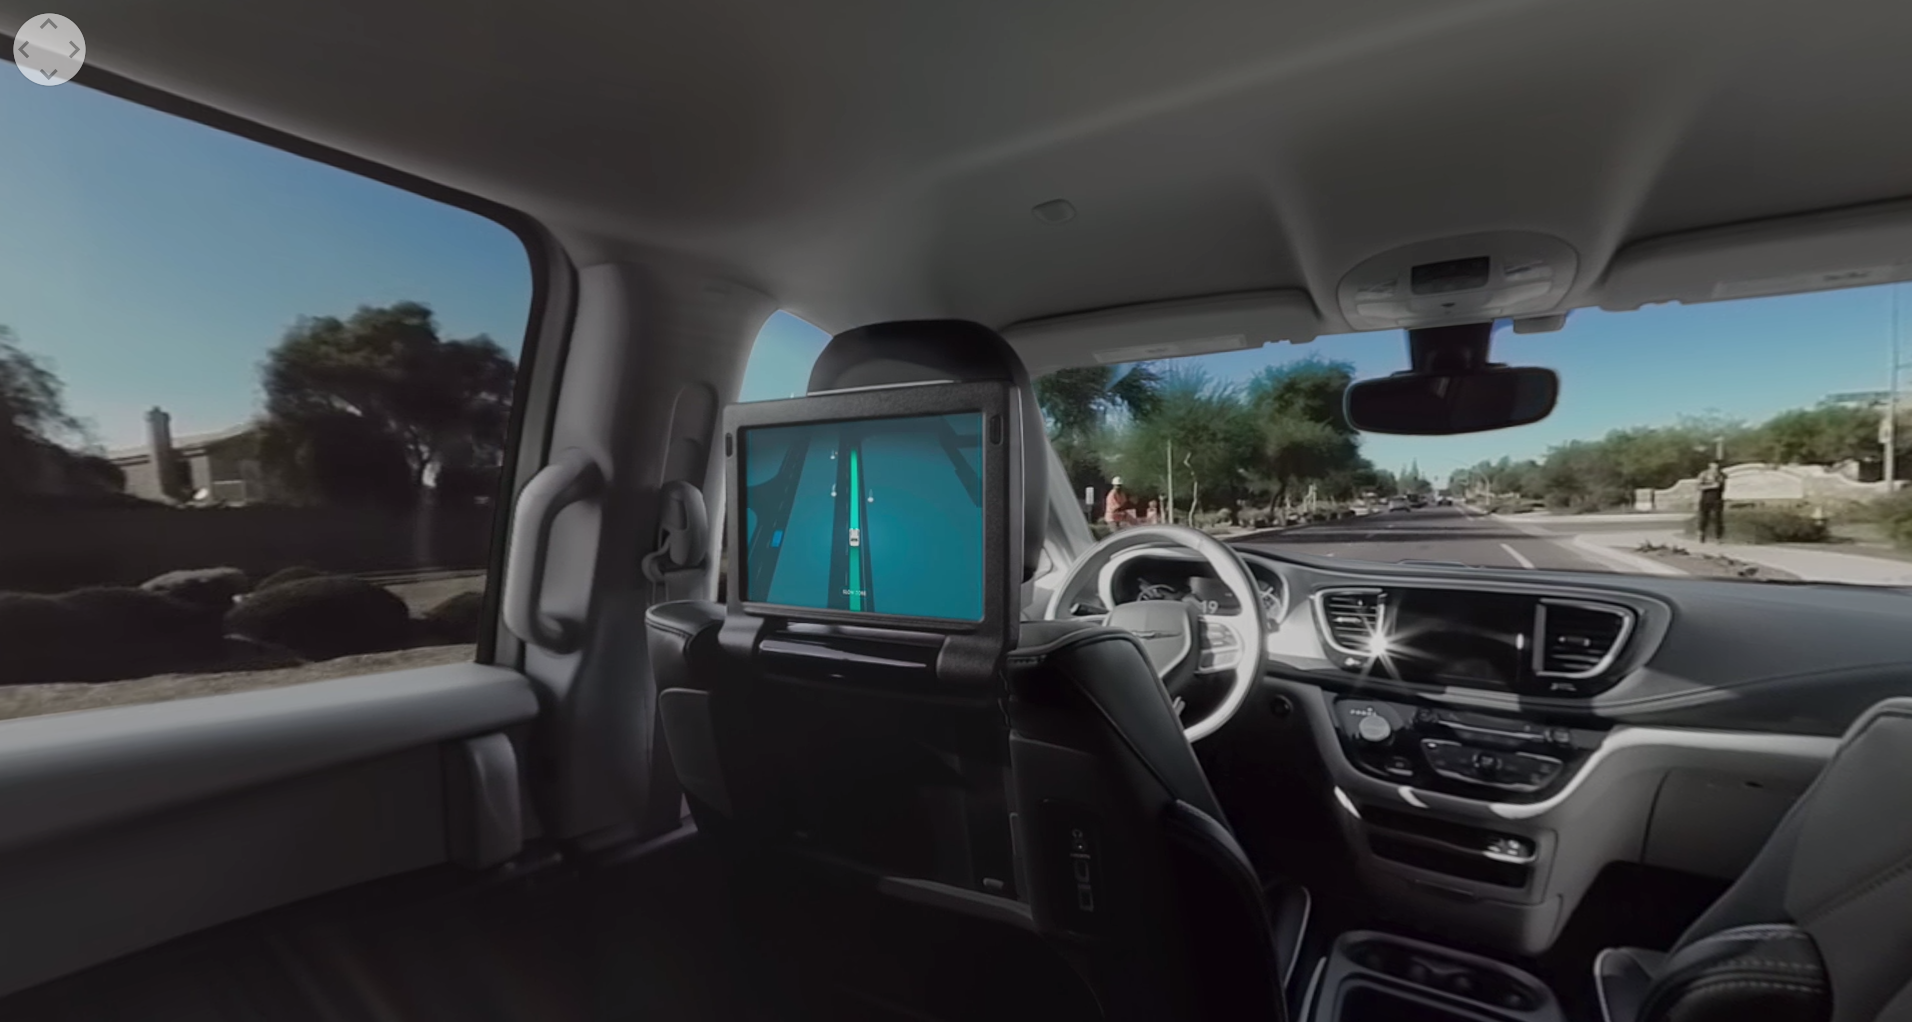 Nézze meg ezt a videót, és próbálja ki, milyen az utazás a Waymo önvezető autójában